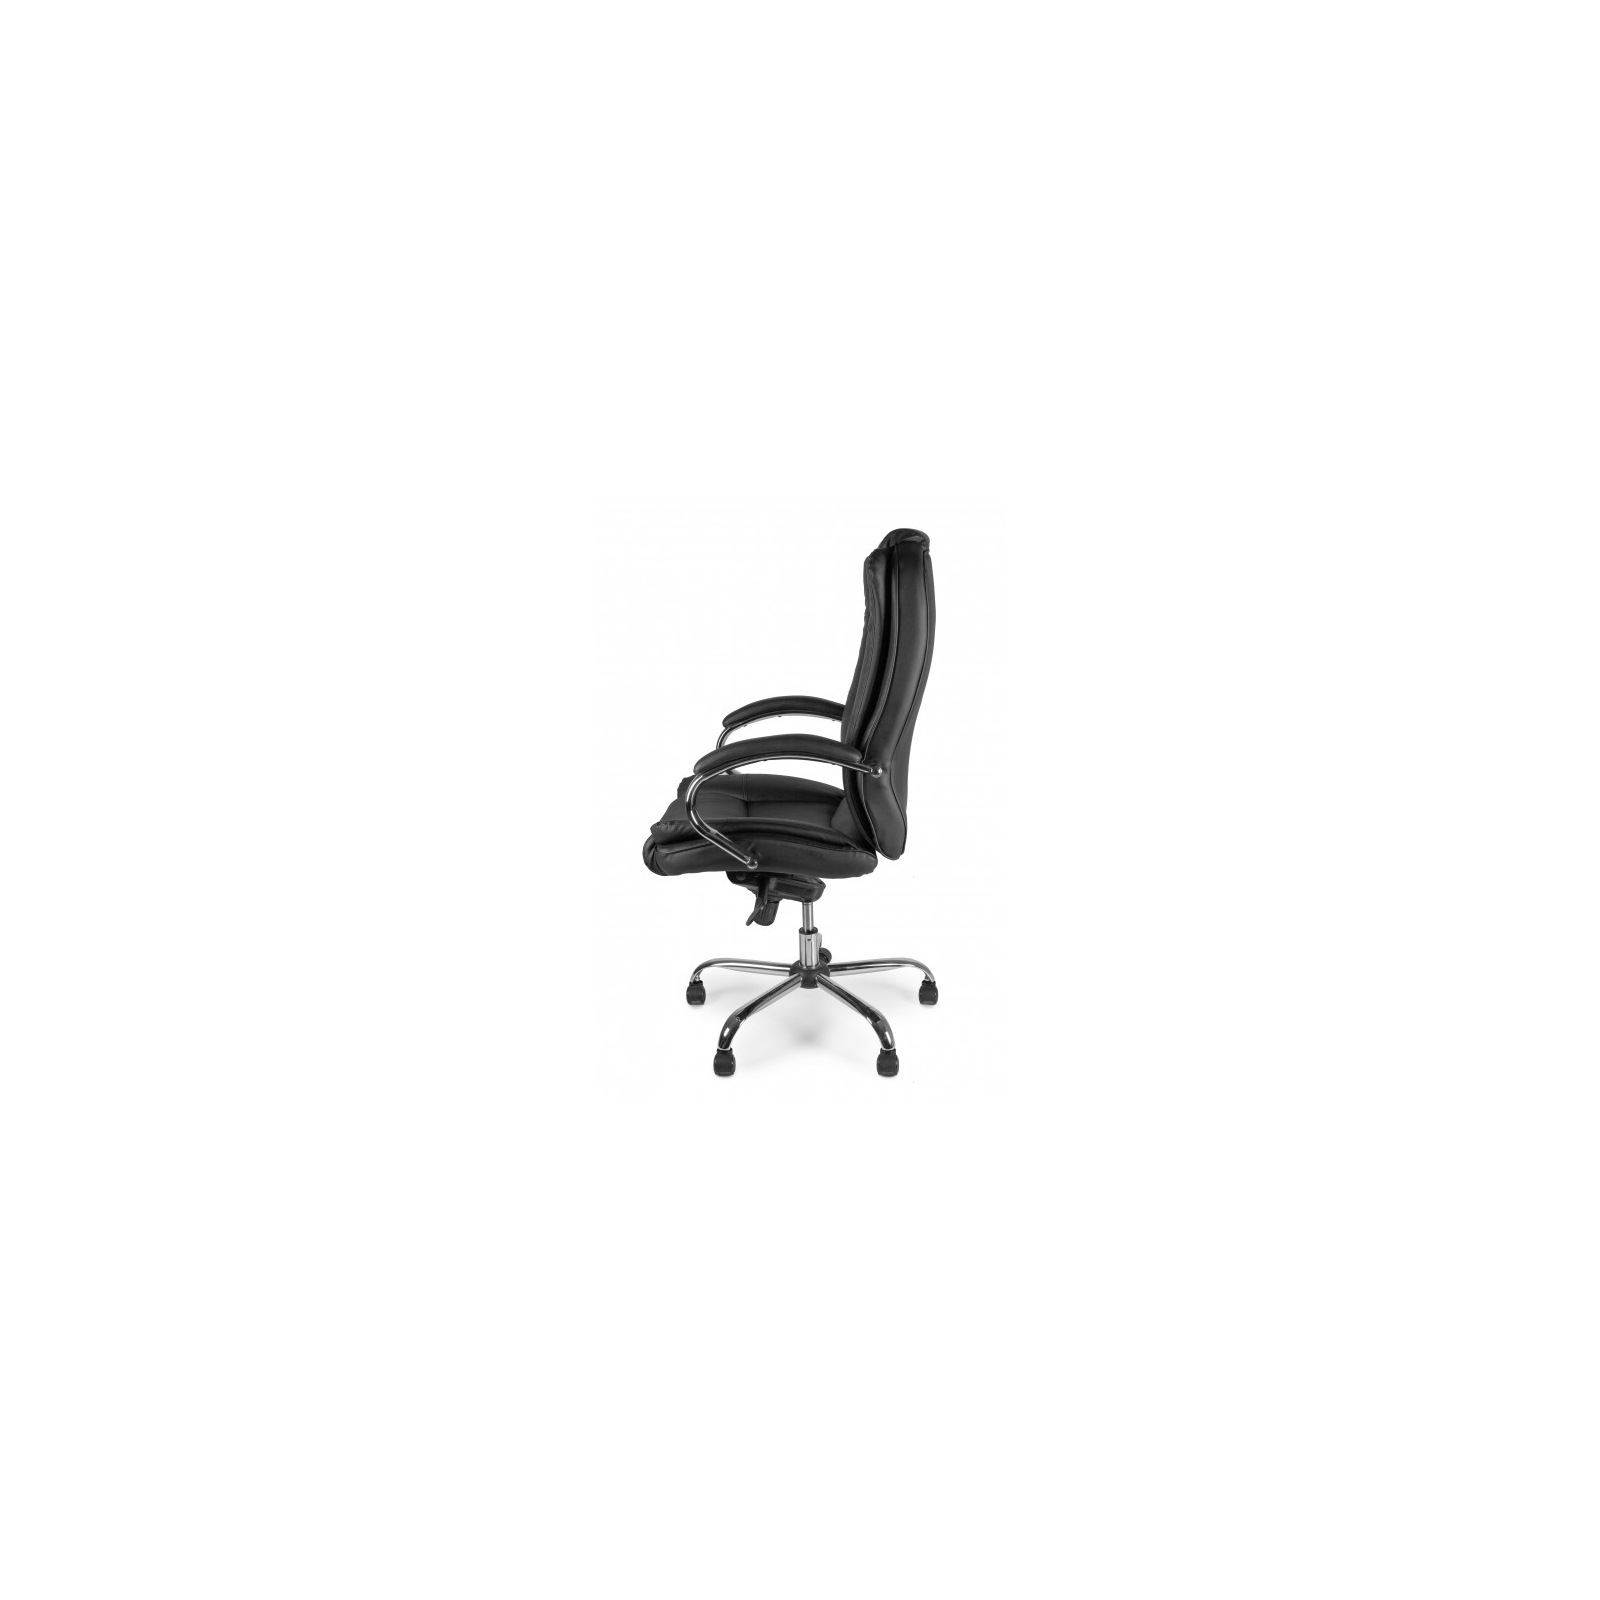 Офисное кресло Barsky Soft Leather MultiBlock Сhrom (Soft-05) изображение 3